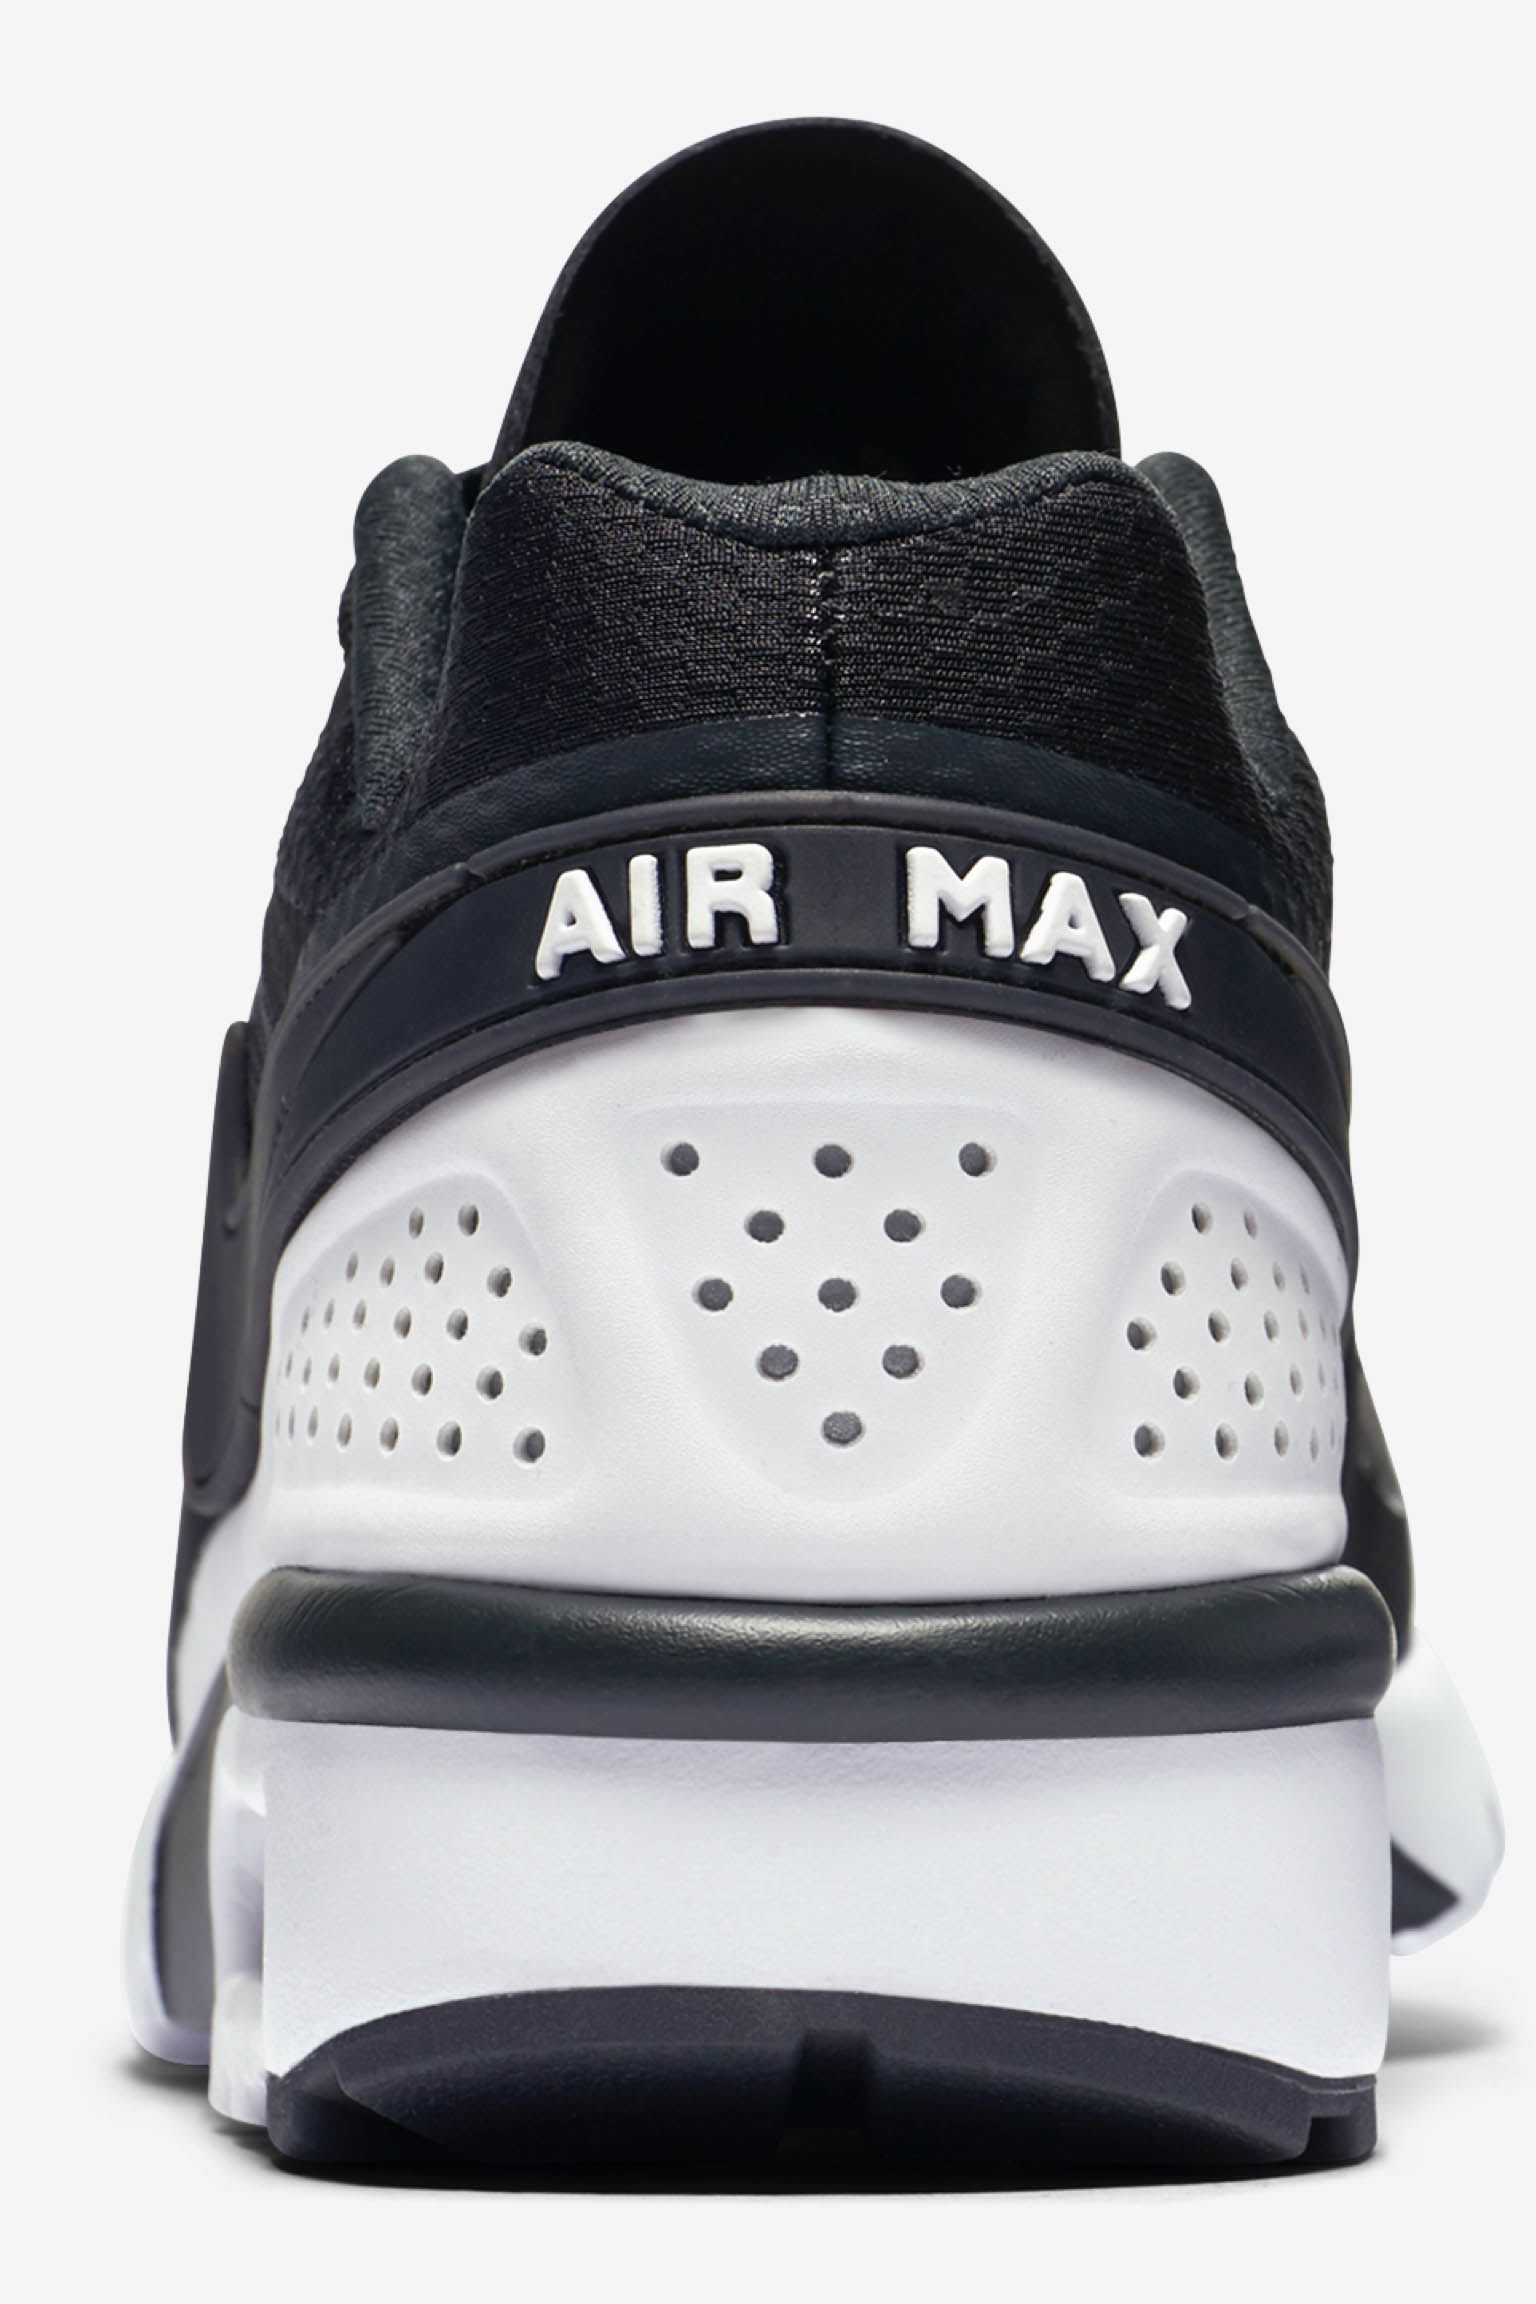 مساج الاحساء منزلي Nike Air Max BW Ultra 'Black & White' Release Date. Nike SNKRS مساج الاحساء منزلي